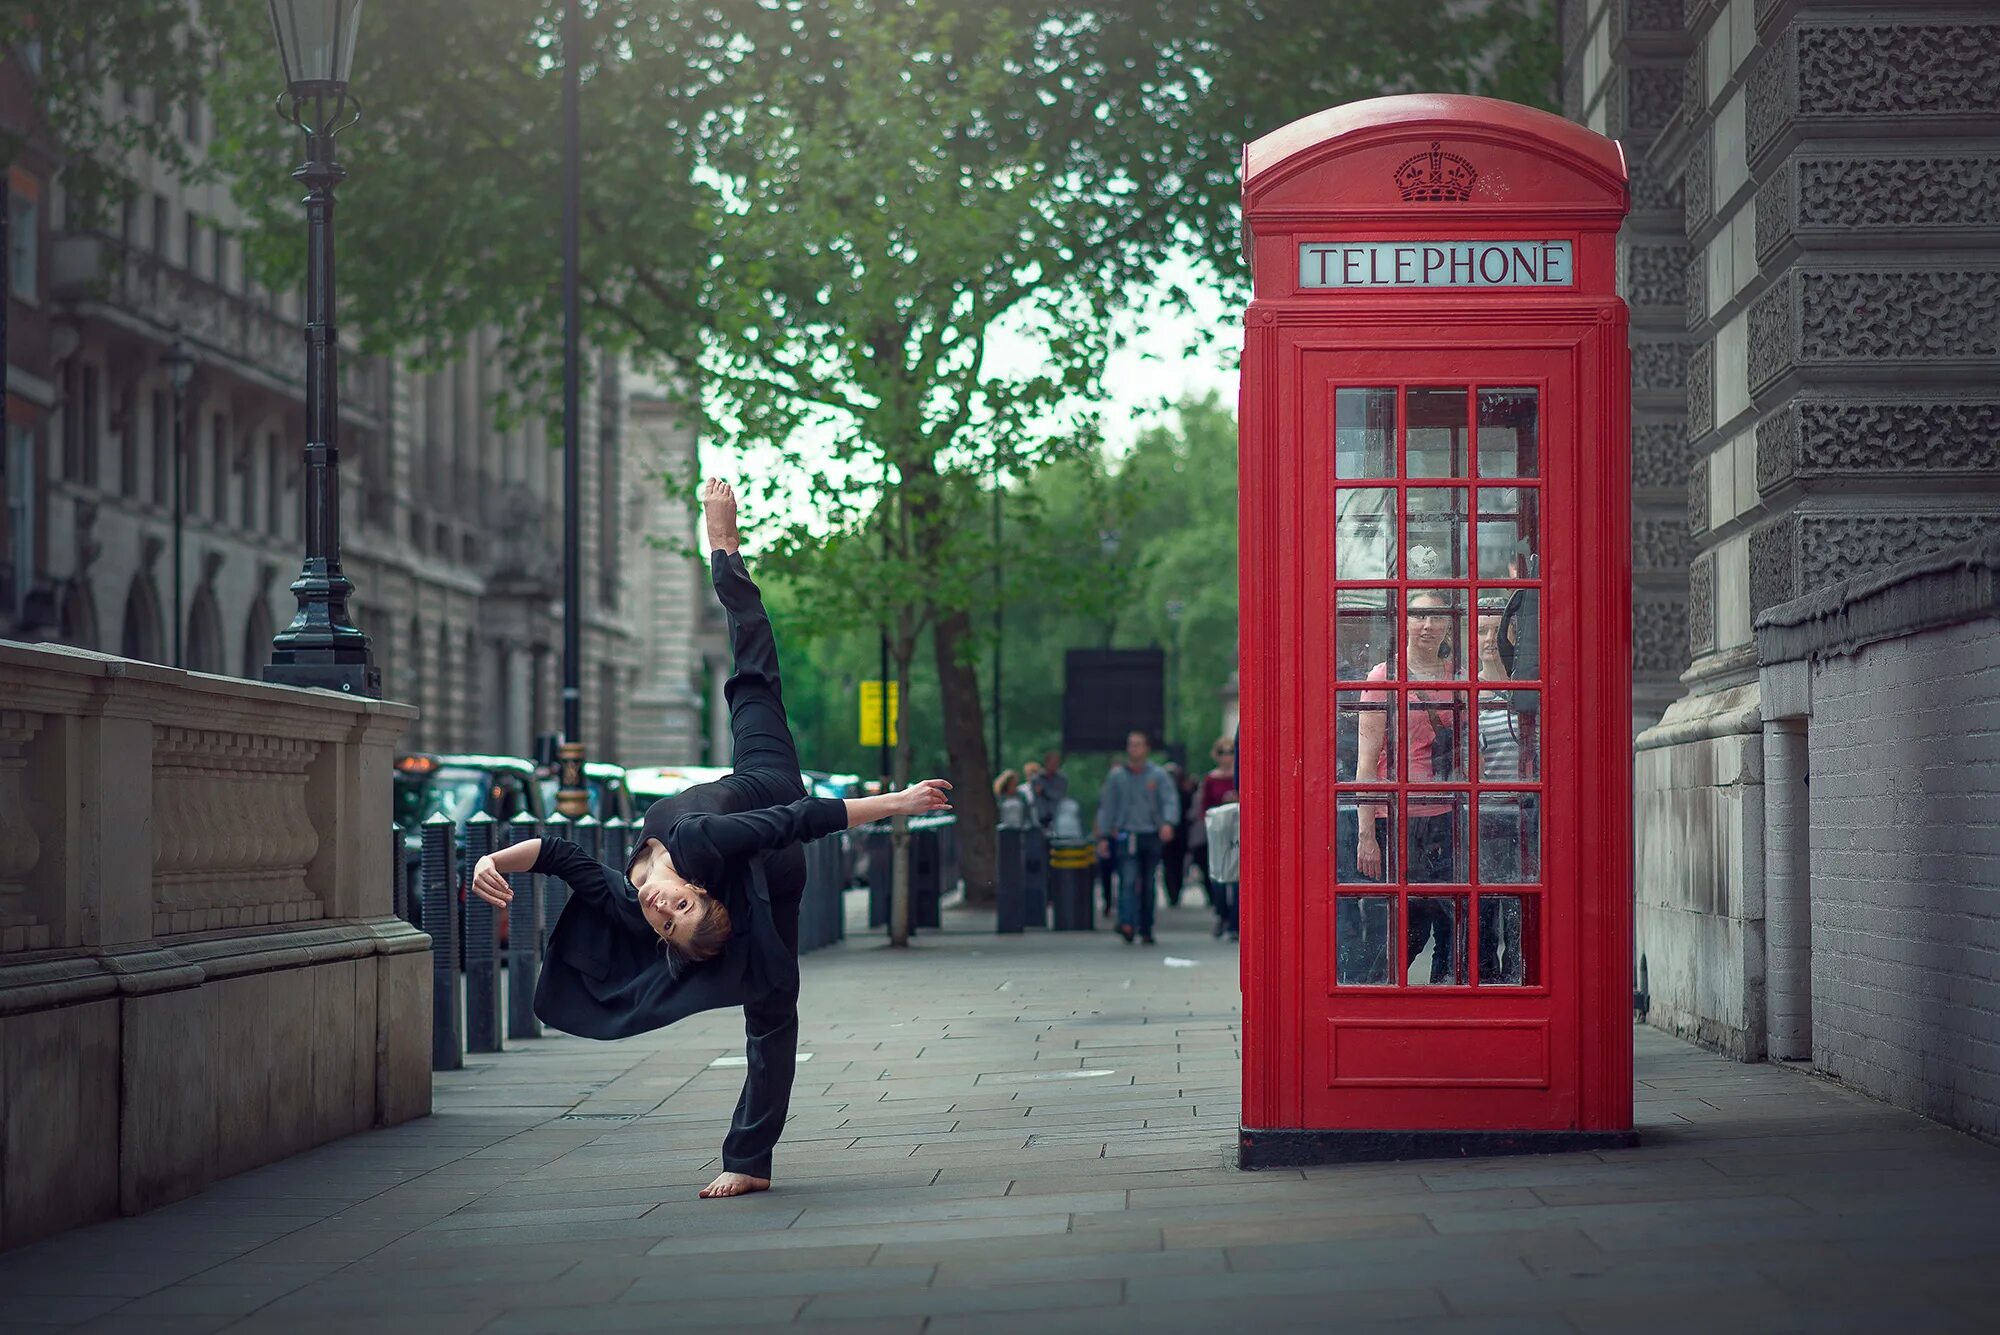 Телефонная будка Лондон. Телефонная будка Англия. Человек в телефонной будке. Улицы Лондона. Фото на улице на телефон